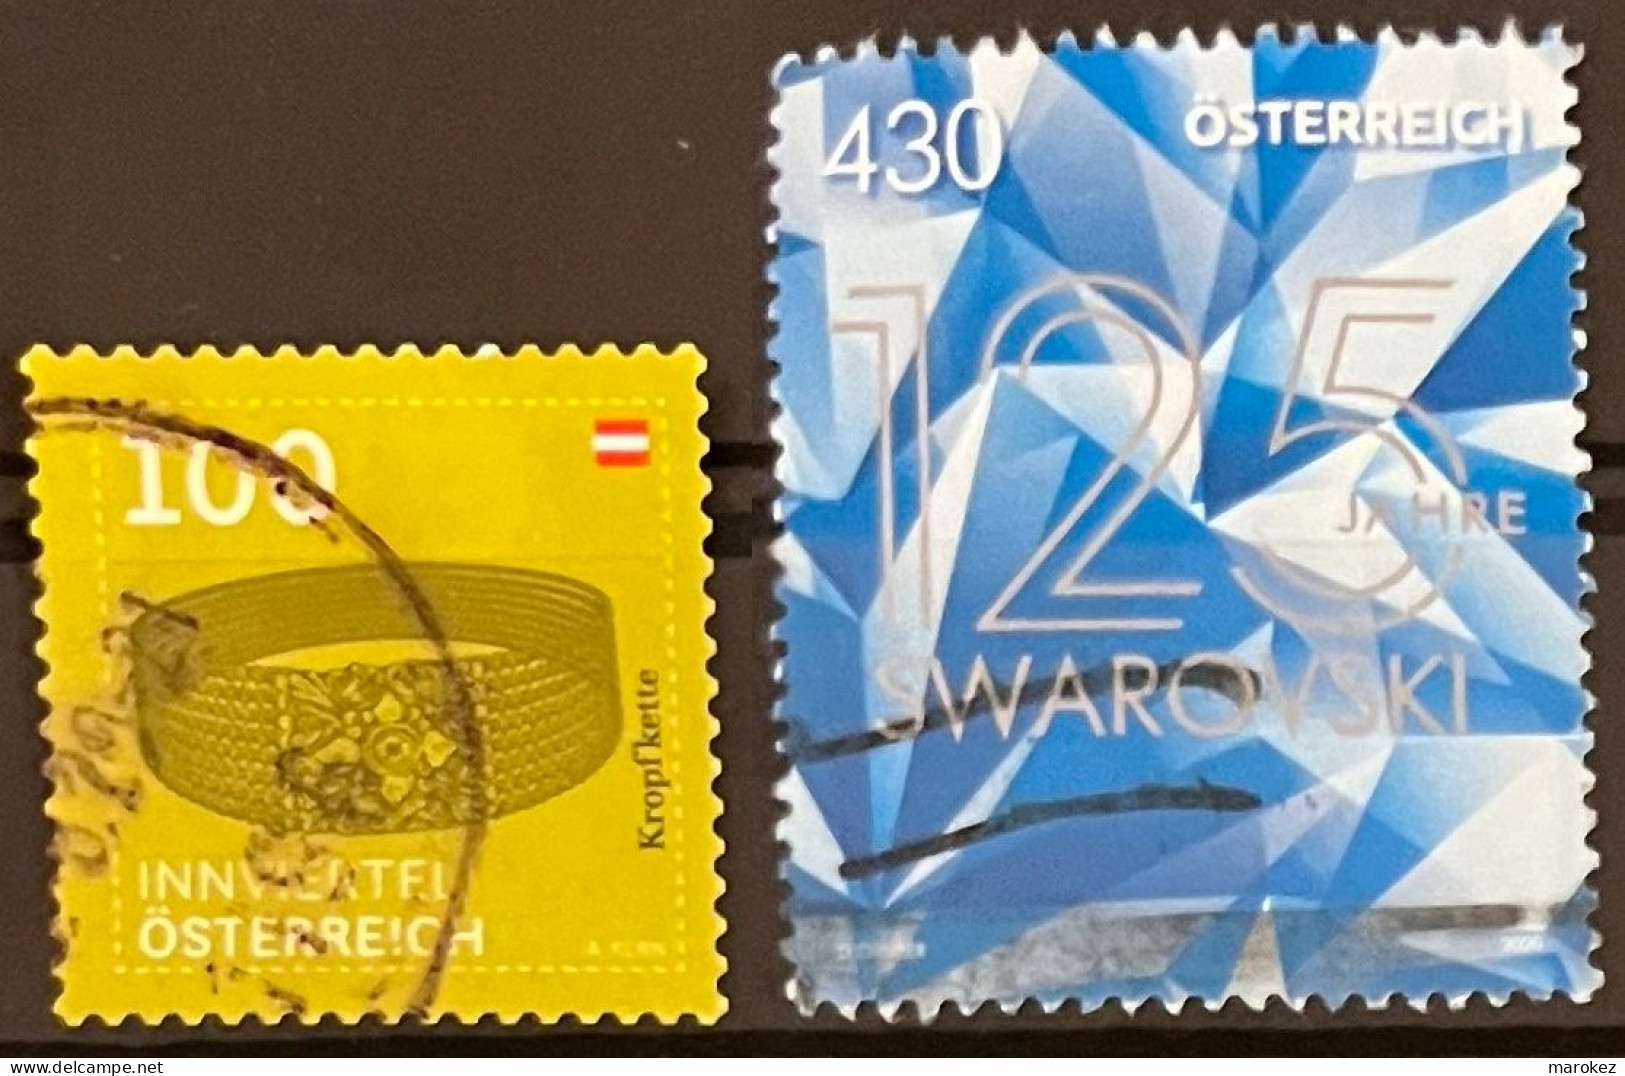 AUSTRIA 2020 Art - Goiter Chain & Swarowski Glass Cutting 2 Postally Used Stamps MICHEL # 3519,3545 - Gebruikt